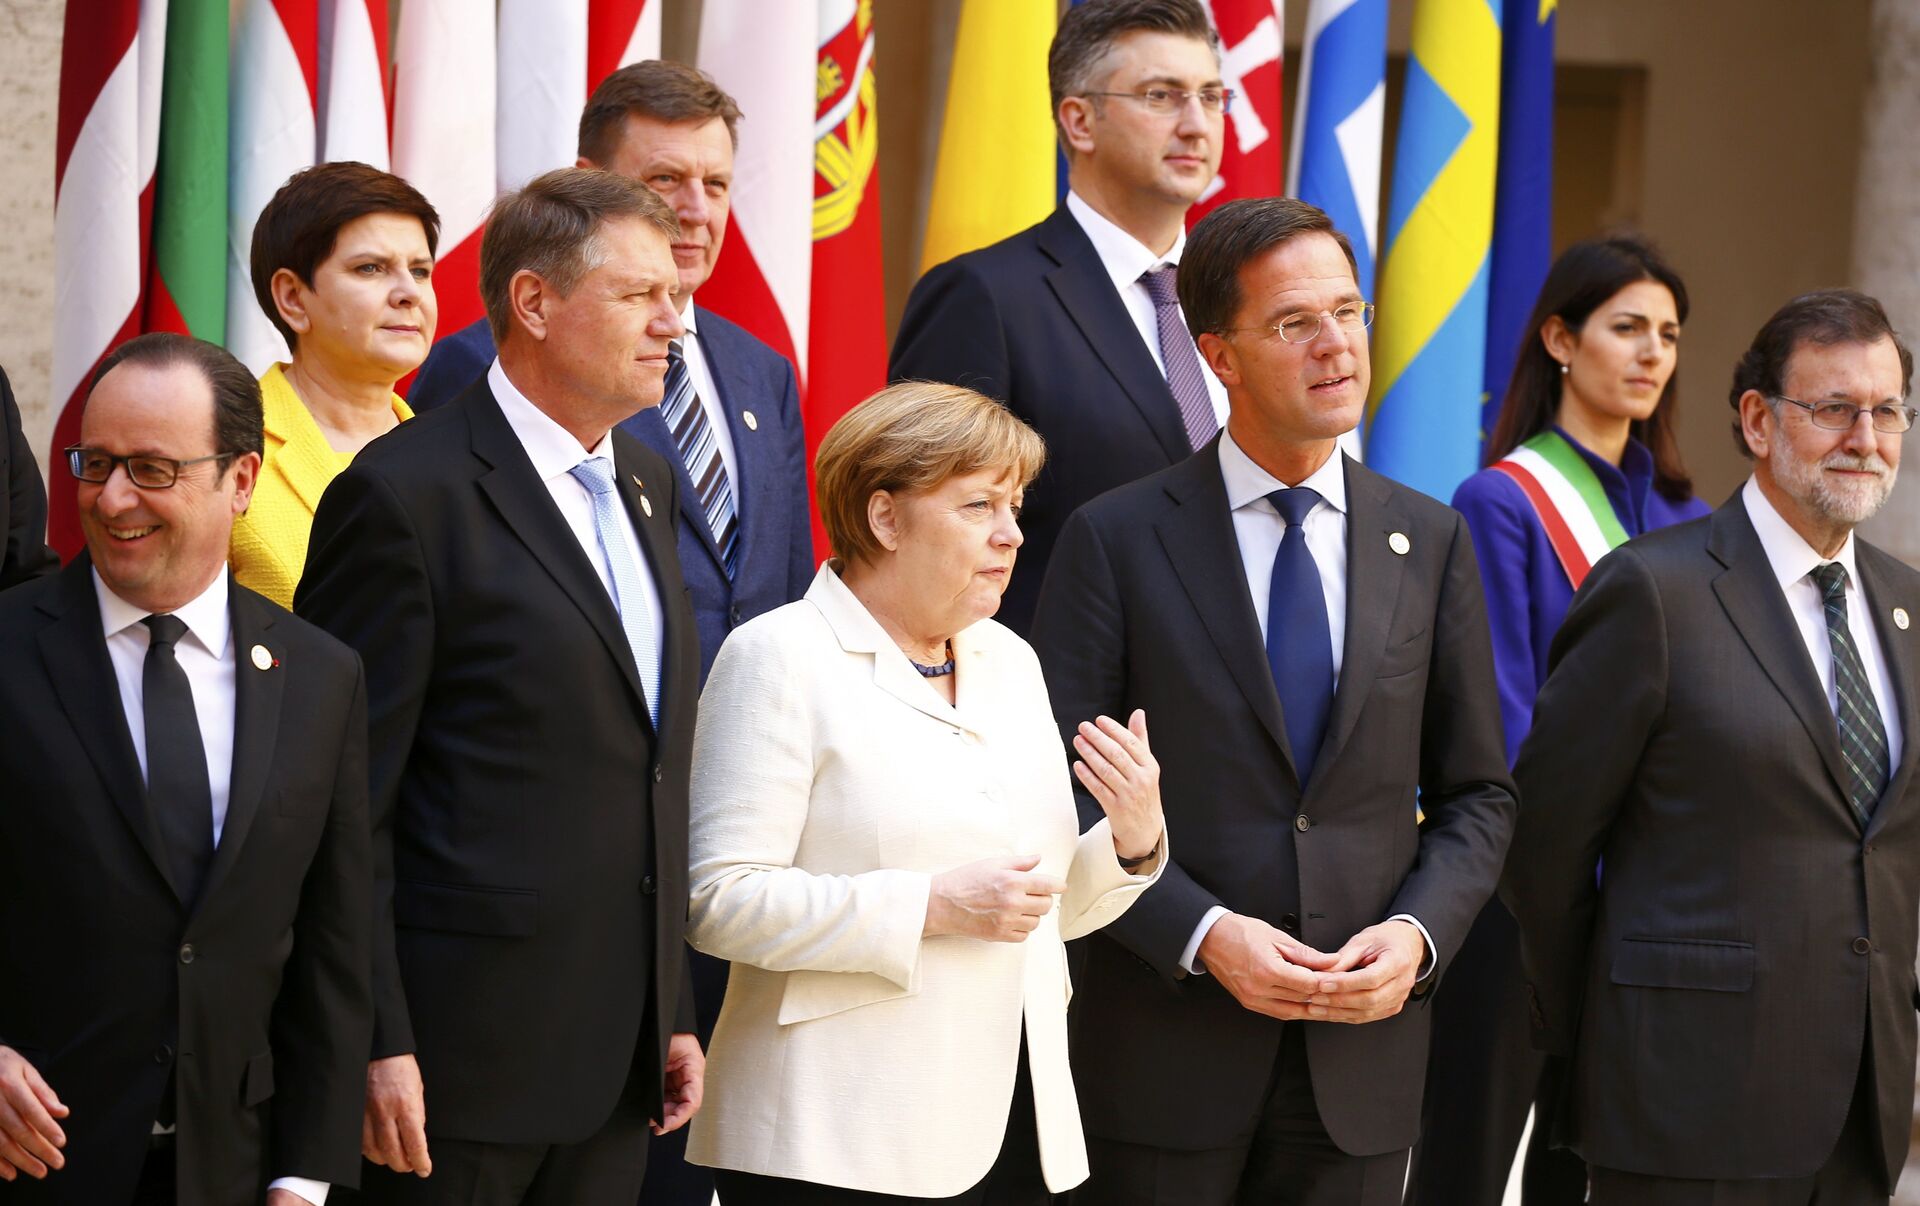 Премьер министры европы. Лидеры Евросоюза. Главы государств ЕС. Политики Европы.